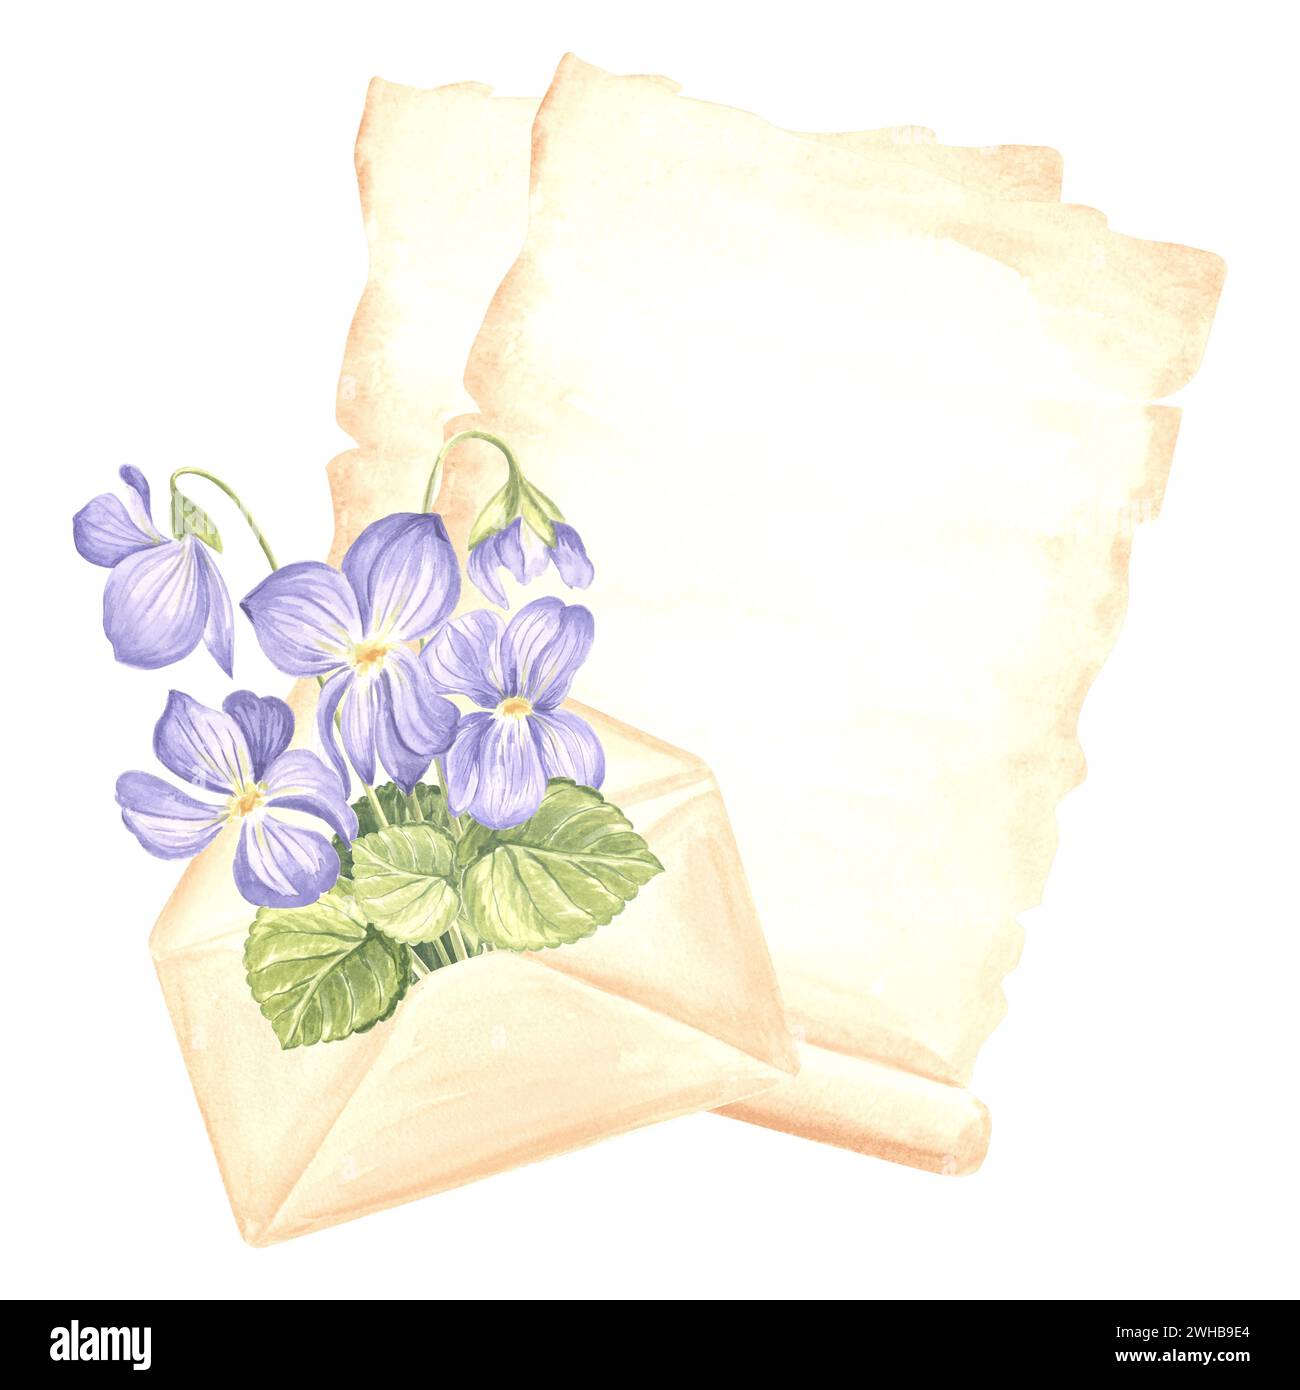 Blätter Pergamentpapier, offener Umschlag mit Blumenstrauß wilder Veilchen mit Blättern. Schreibzubehör. Isolierte handgezeichnete Aquarellillustraten Stockfoto